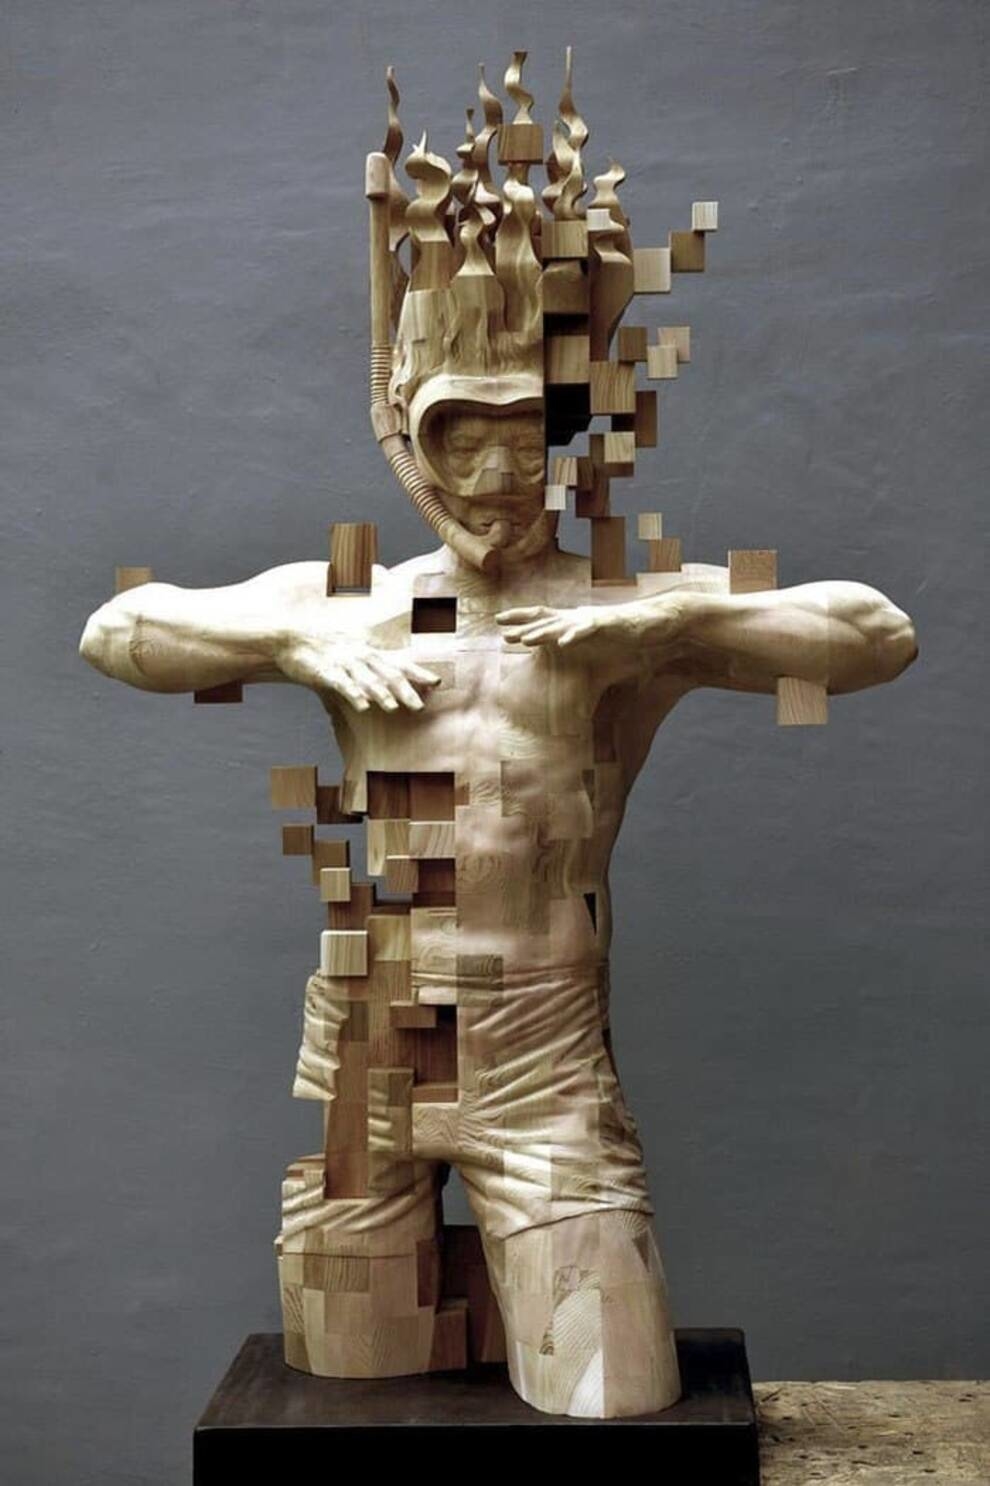 Пікселі як мистецтво: різьбяр по дереву з Тайвані використовує незвичайну техніку створення скульптур